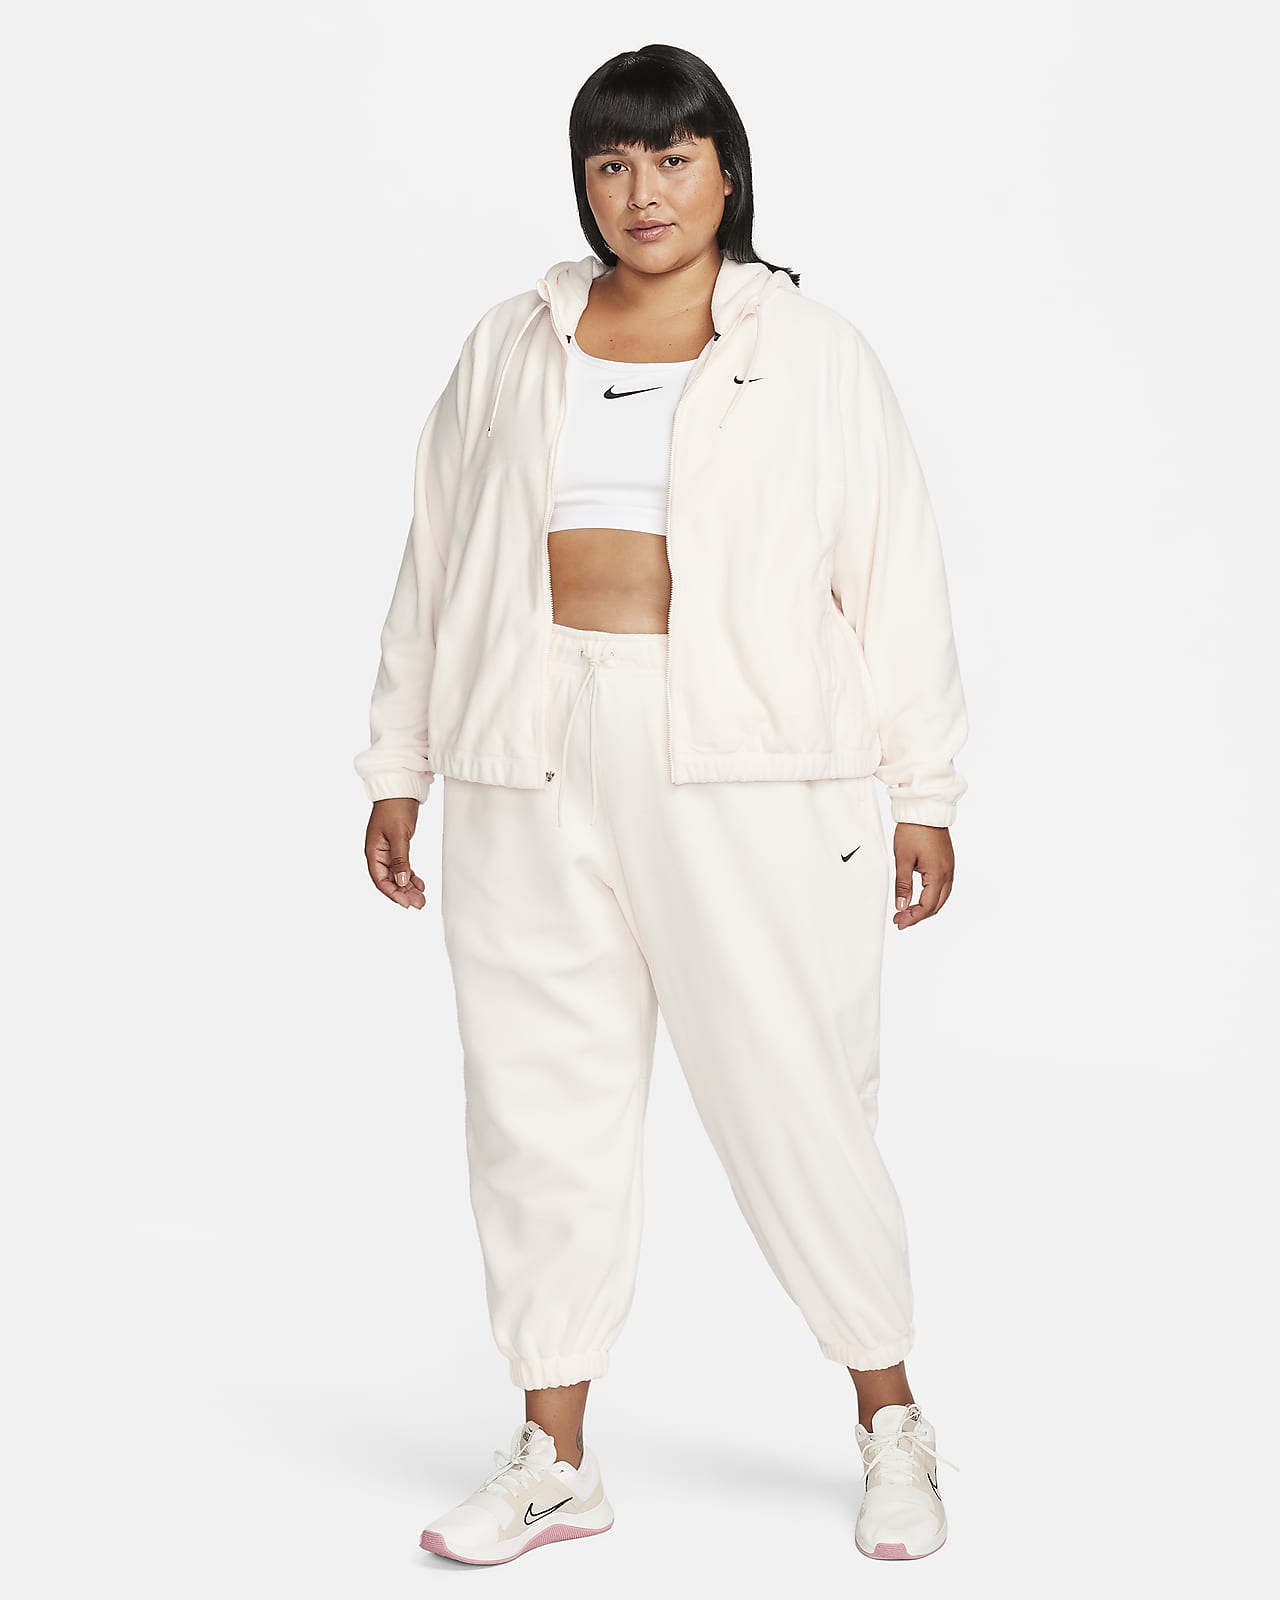 Nike Women's Plus Sportswear Essential Fleece Pants (Heather Grey